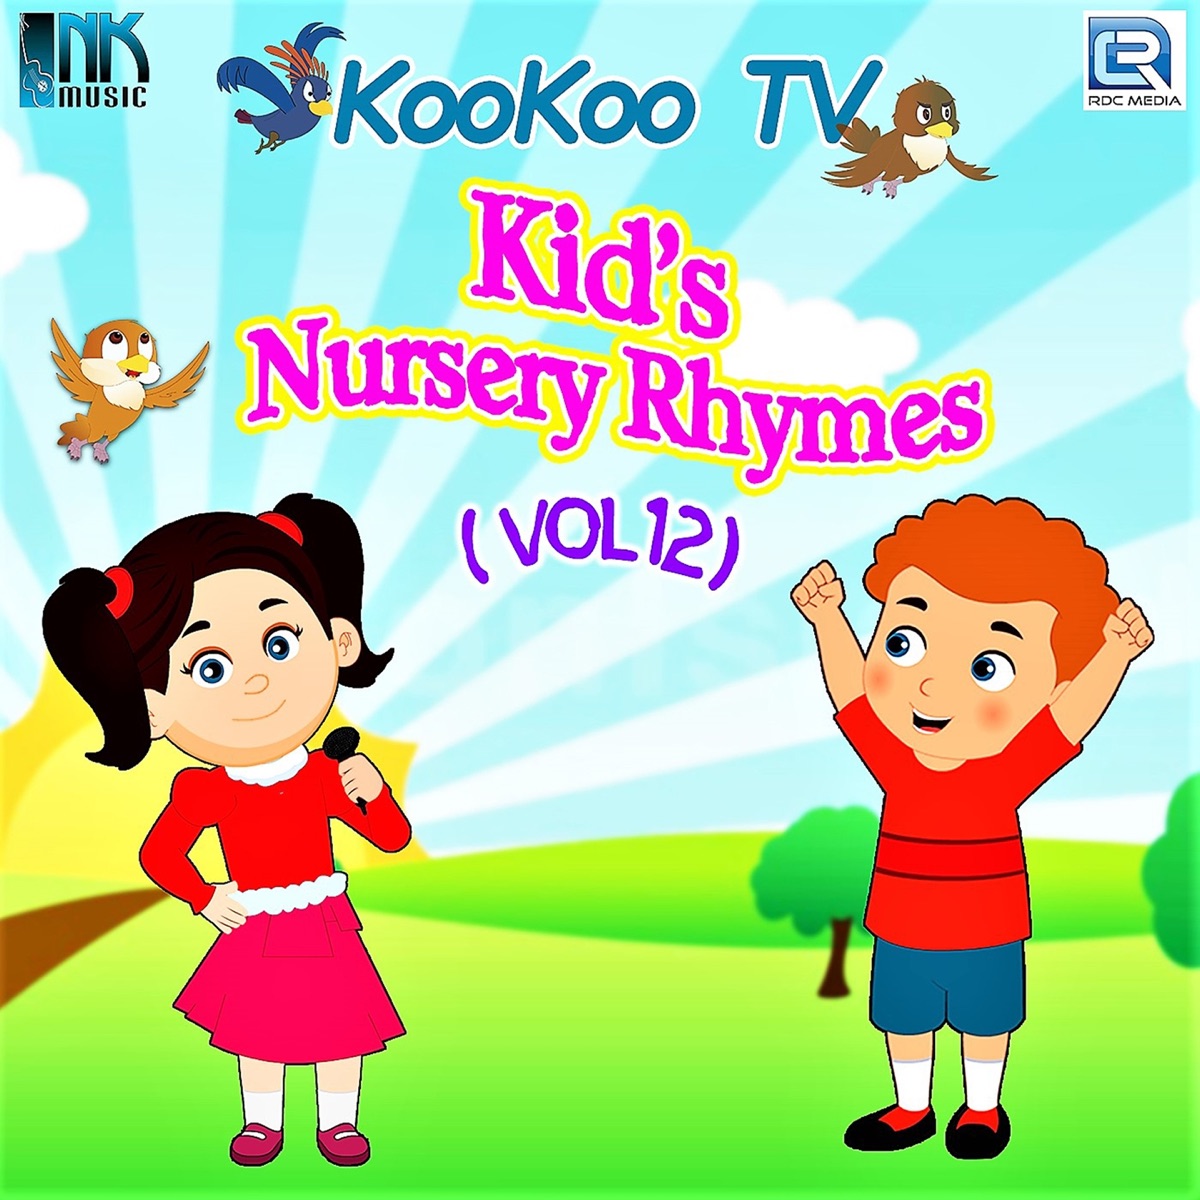 Koo Koo . Kids Nursery Rhymes, Vol. 6 by Dipanwita Mitra on Apple Music